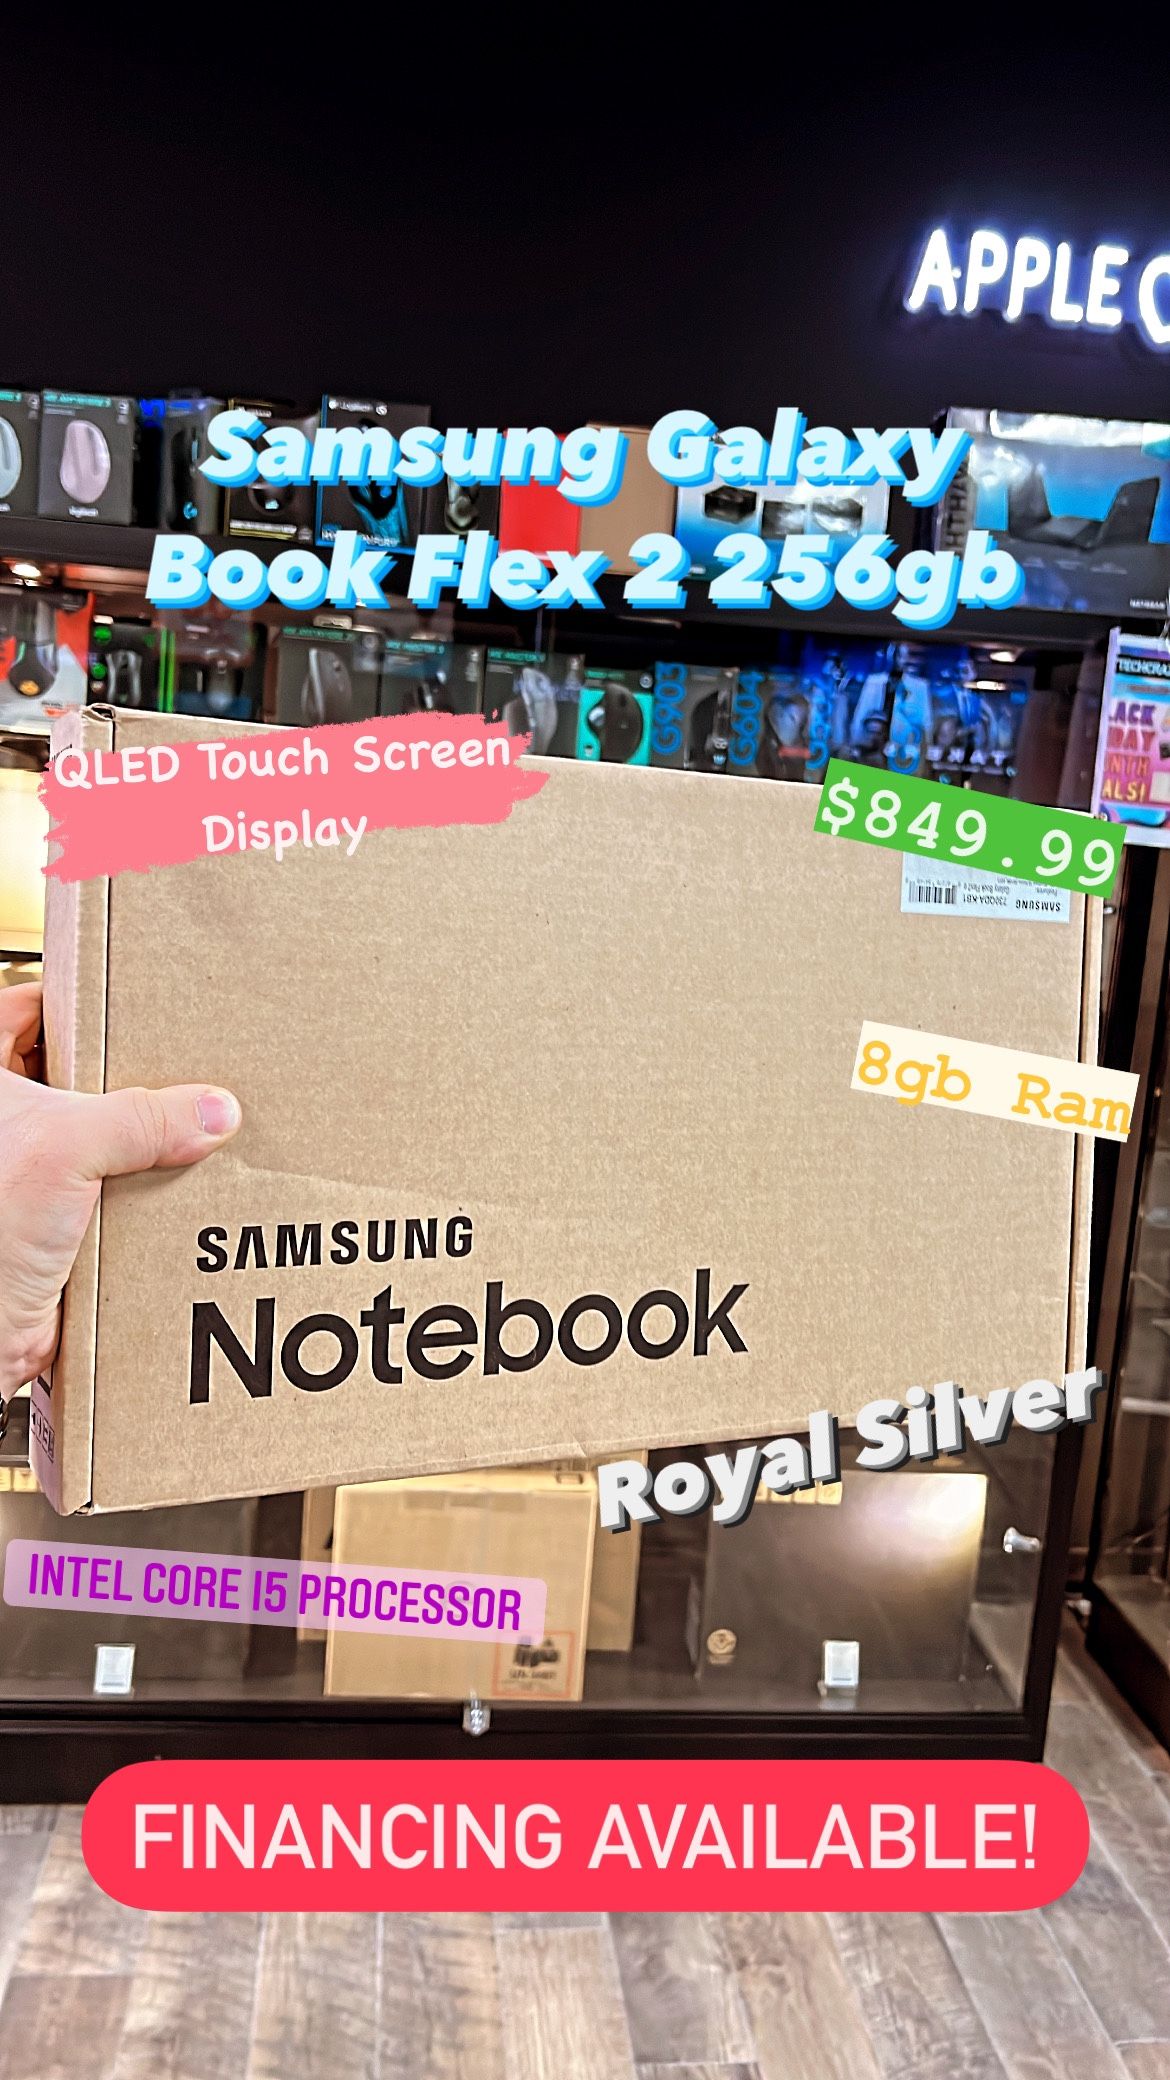 Samsung Galaxy Book Flex 2 QLED Touch-Screen 256gb Royal Silver **NEW**